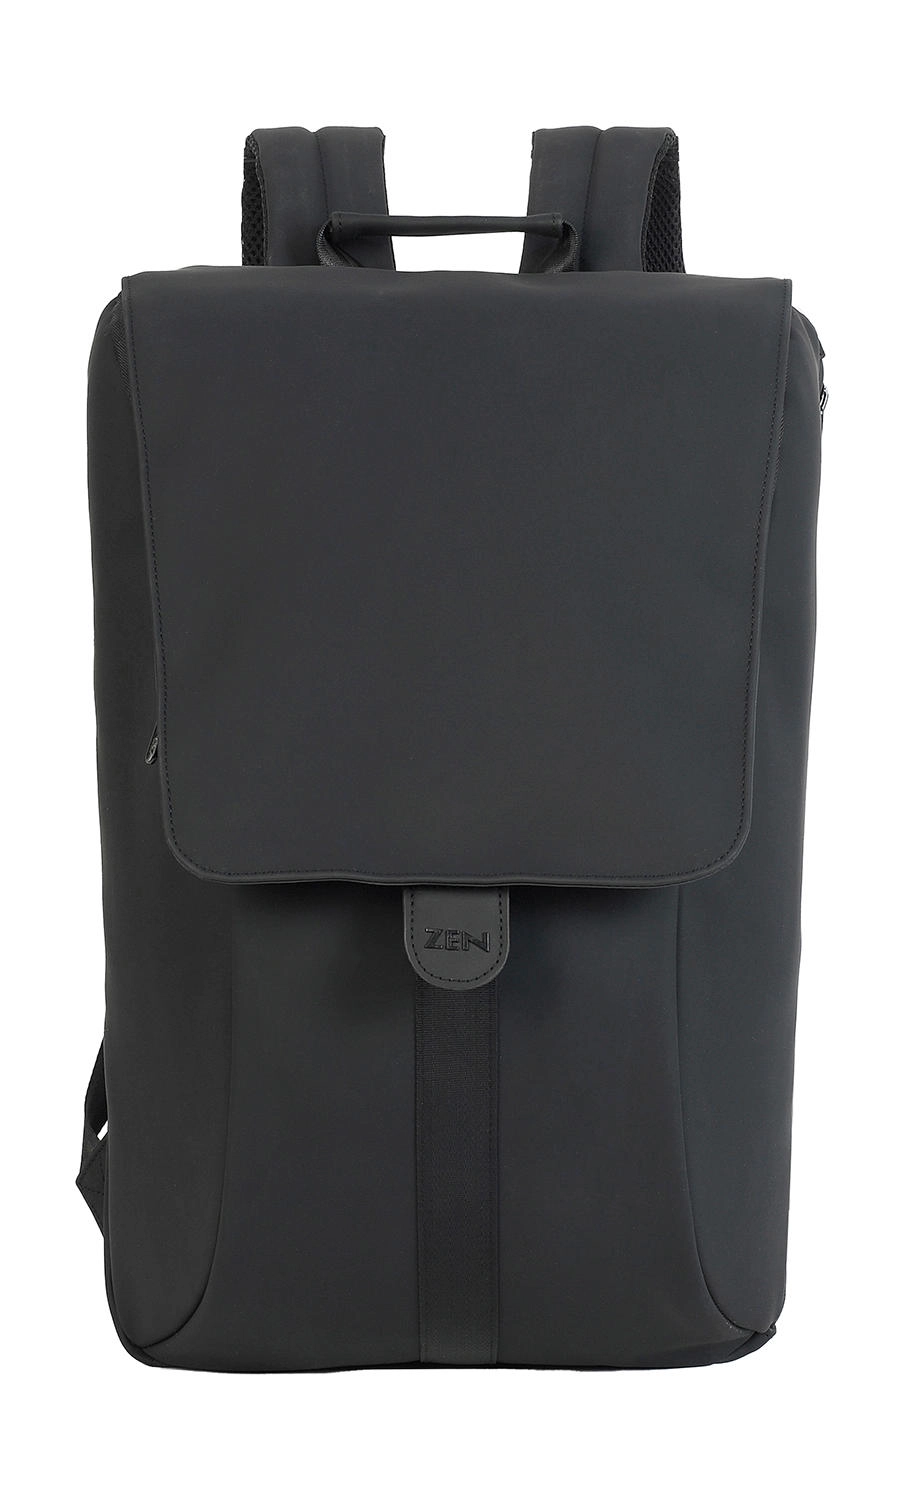 Amber Chic Laptop Backpack zum Besticken und Bedrucken in der Farbe Black mit Ihren Logo, Schriftzug oder Motiv.